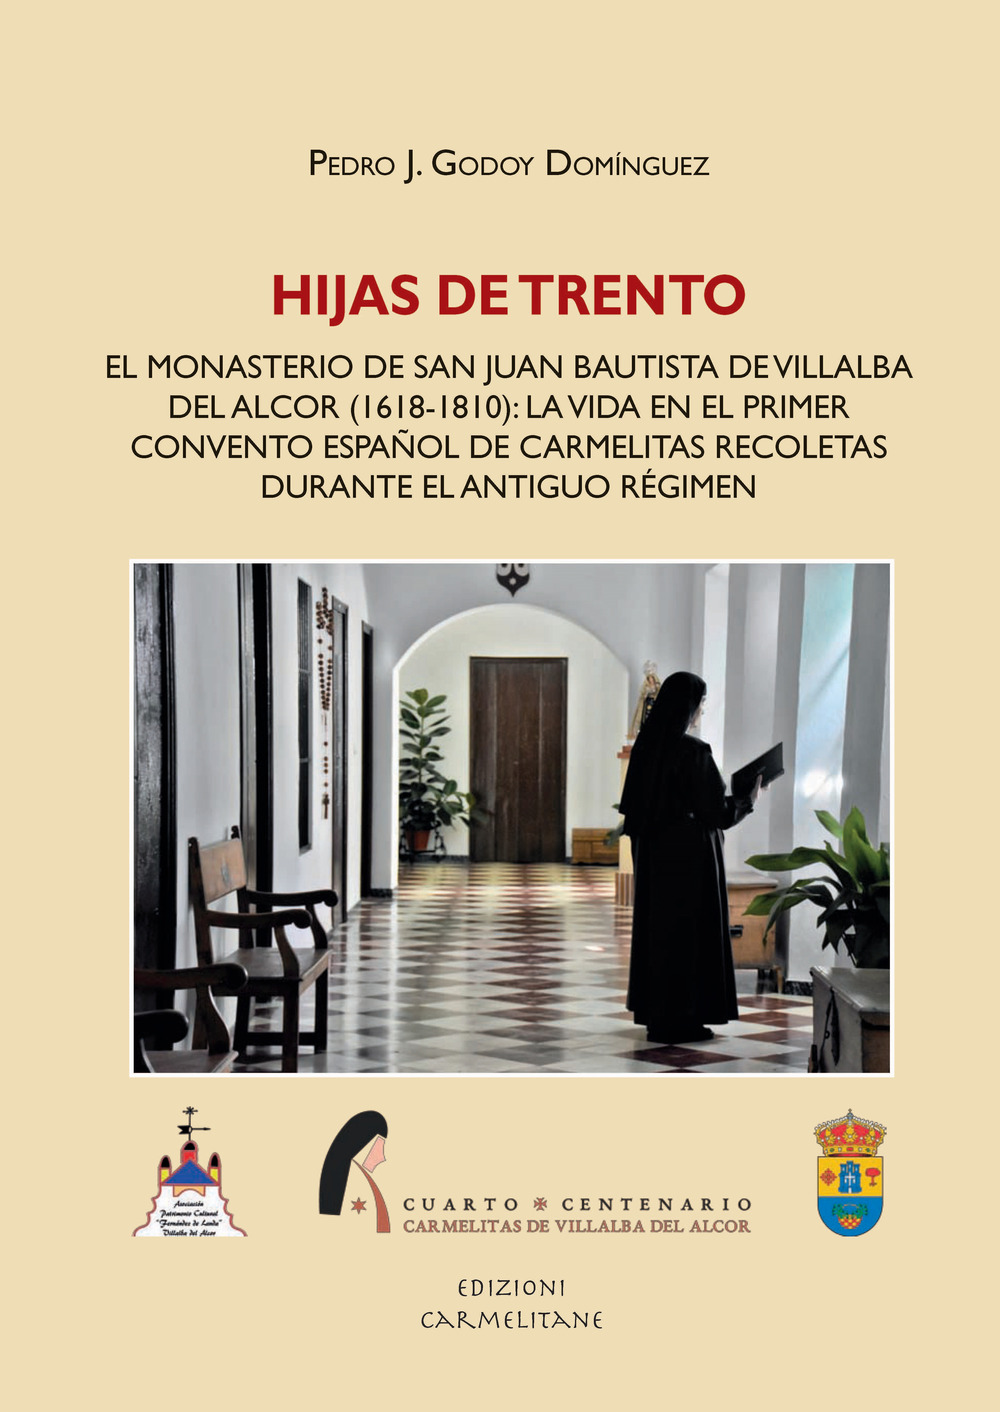 Hijas de Trento. El Monasterio de San Juan Bautista de Villalba del Alcor (1618-1810): la vida en el primer convento español de carmelitas recoletas durante el Anti